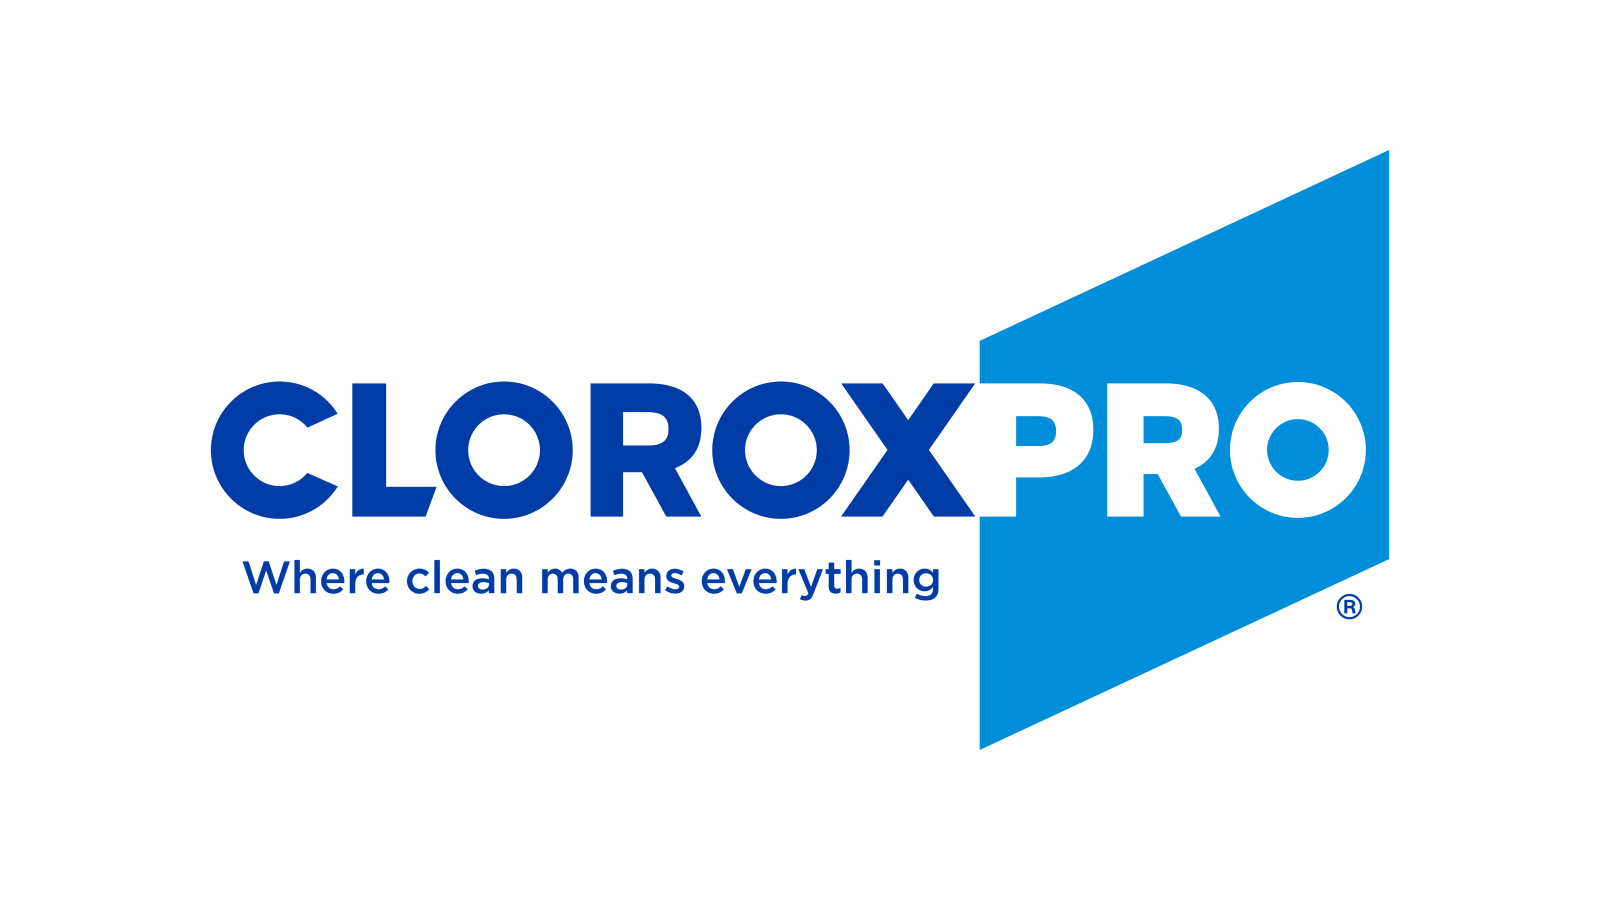 www.cloroxpro.com